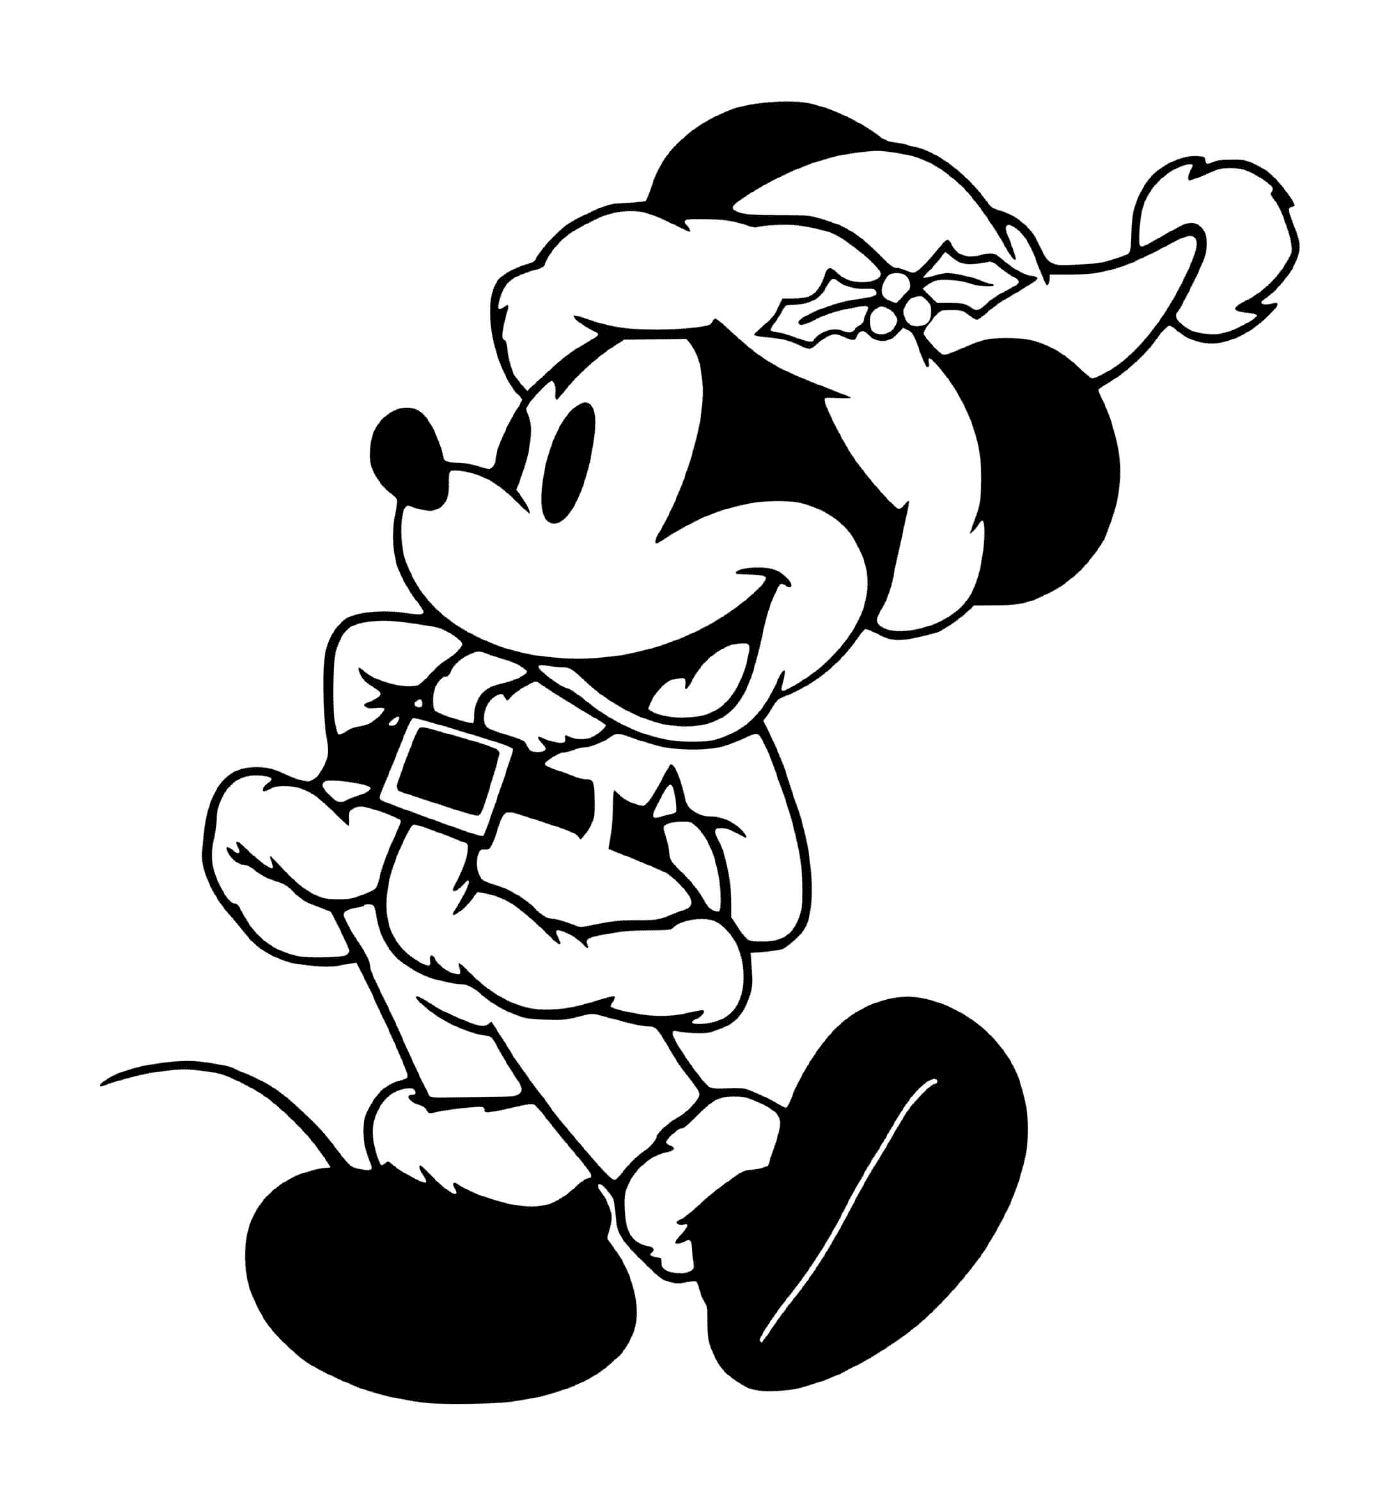  Mickey en el clásico Santa Claus 